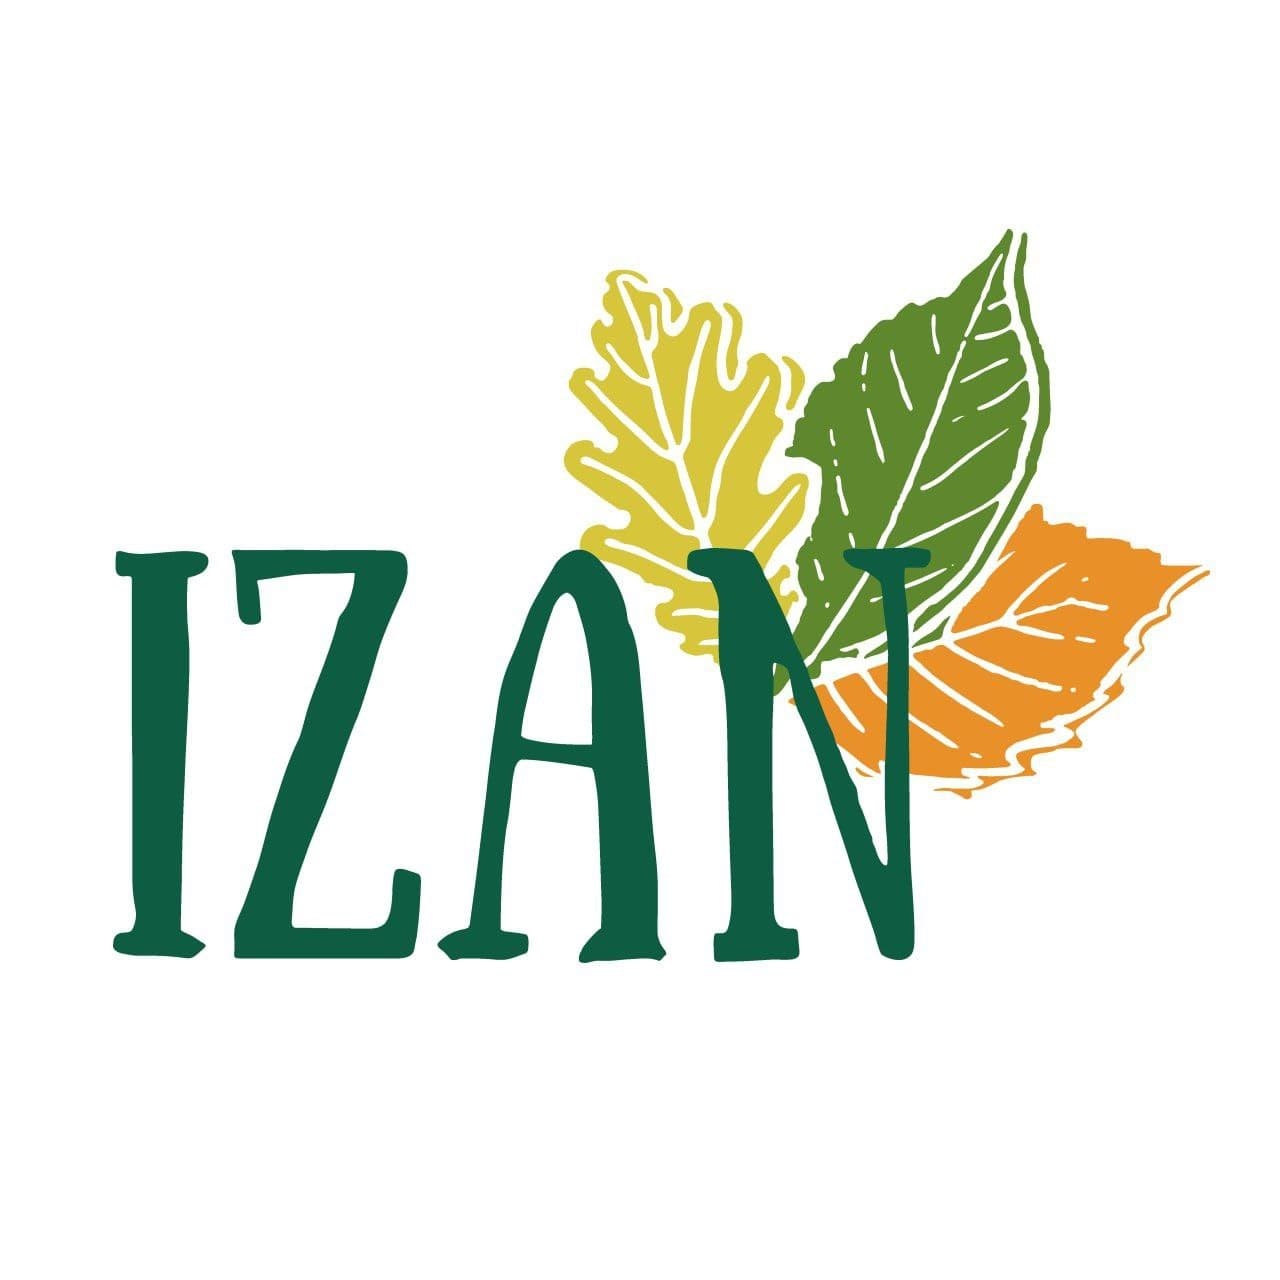 IZAN (IZAN) hauteskunde-alderdiaren logotipoa